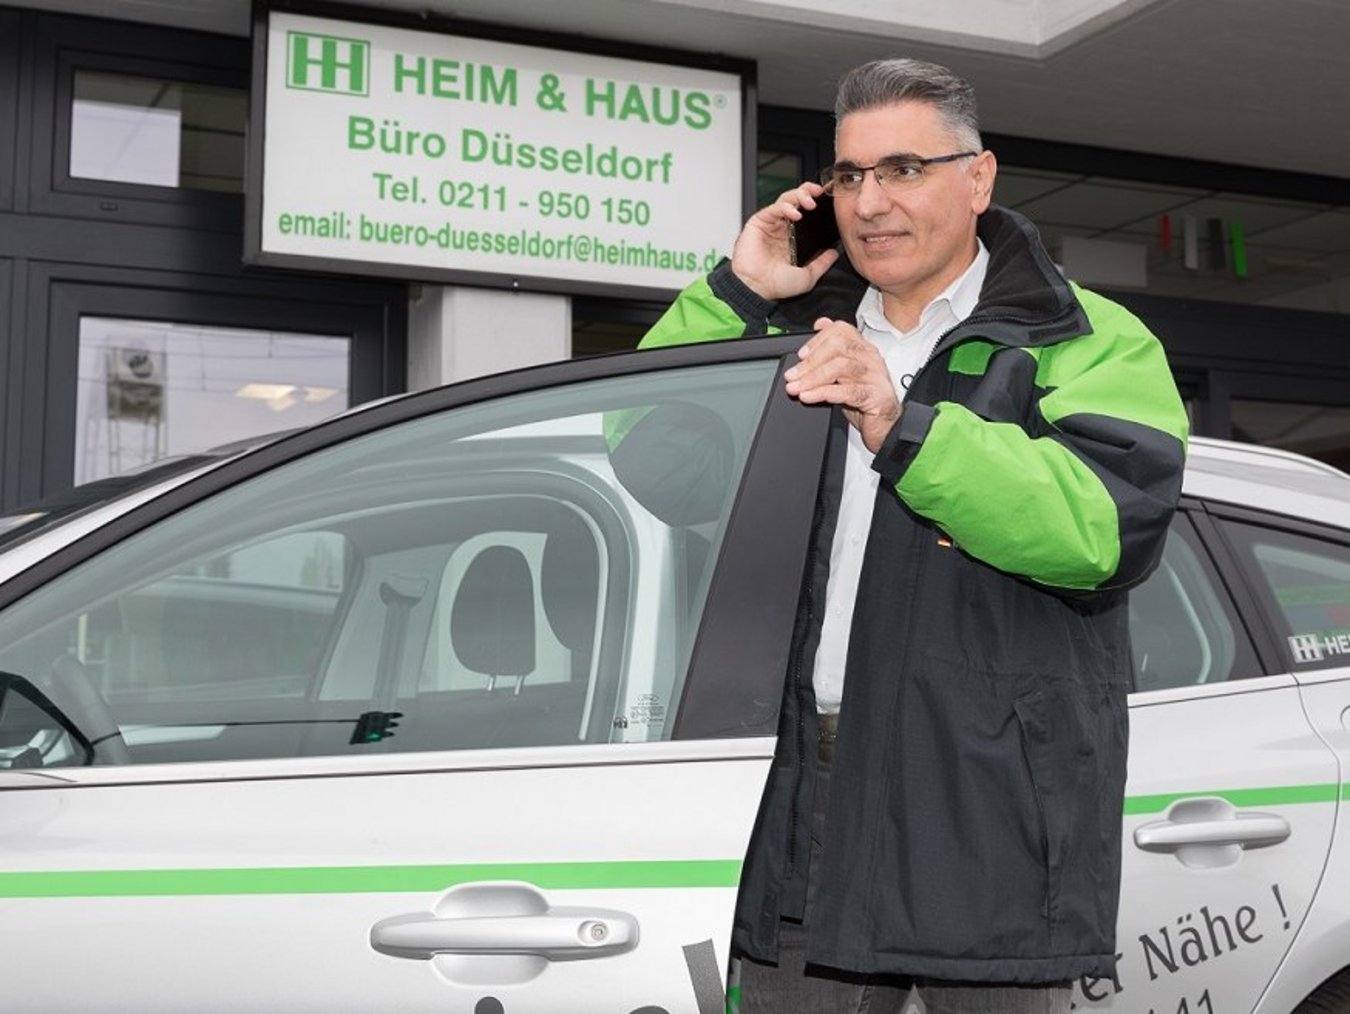 HEIM & HAUS Fachberater der Verkaufsleitung Düsseldorf an einem Handy im Auto